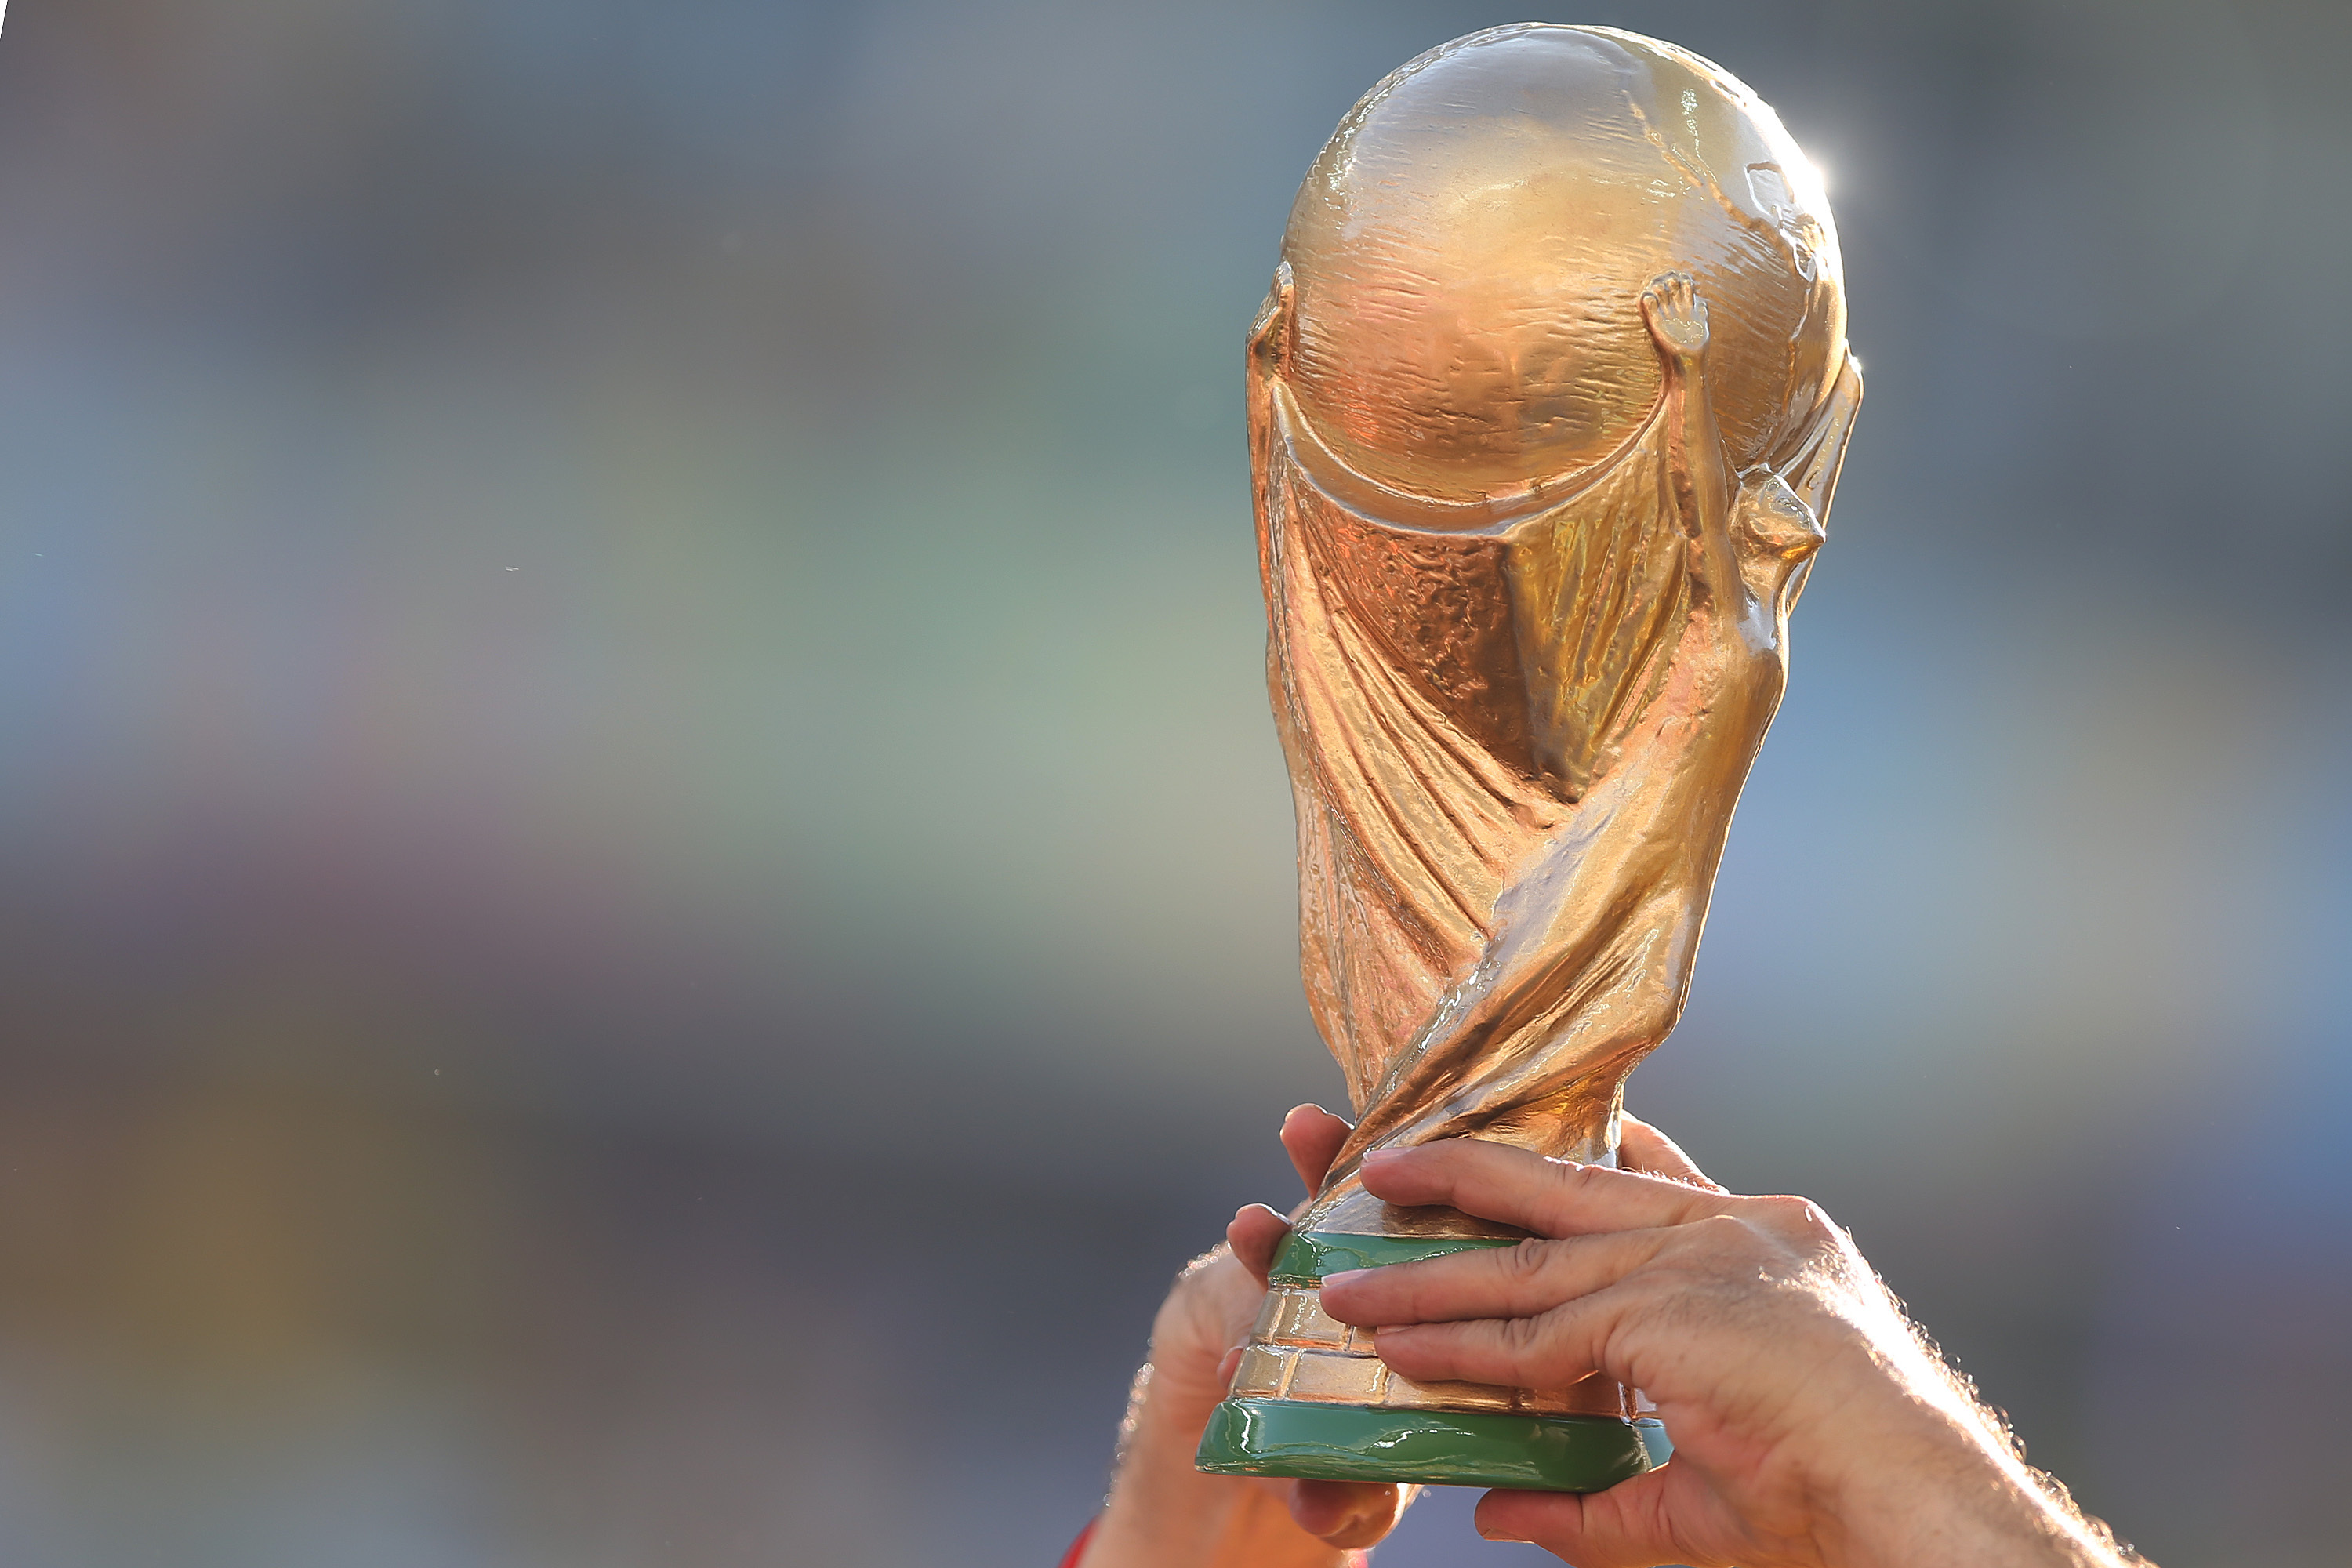 Puchar Mistrzostw Świata w Piłce Nożnej FIFA - wartość i historia